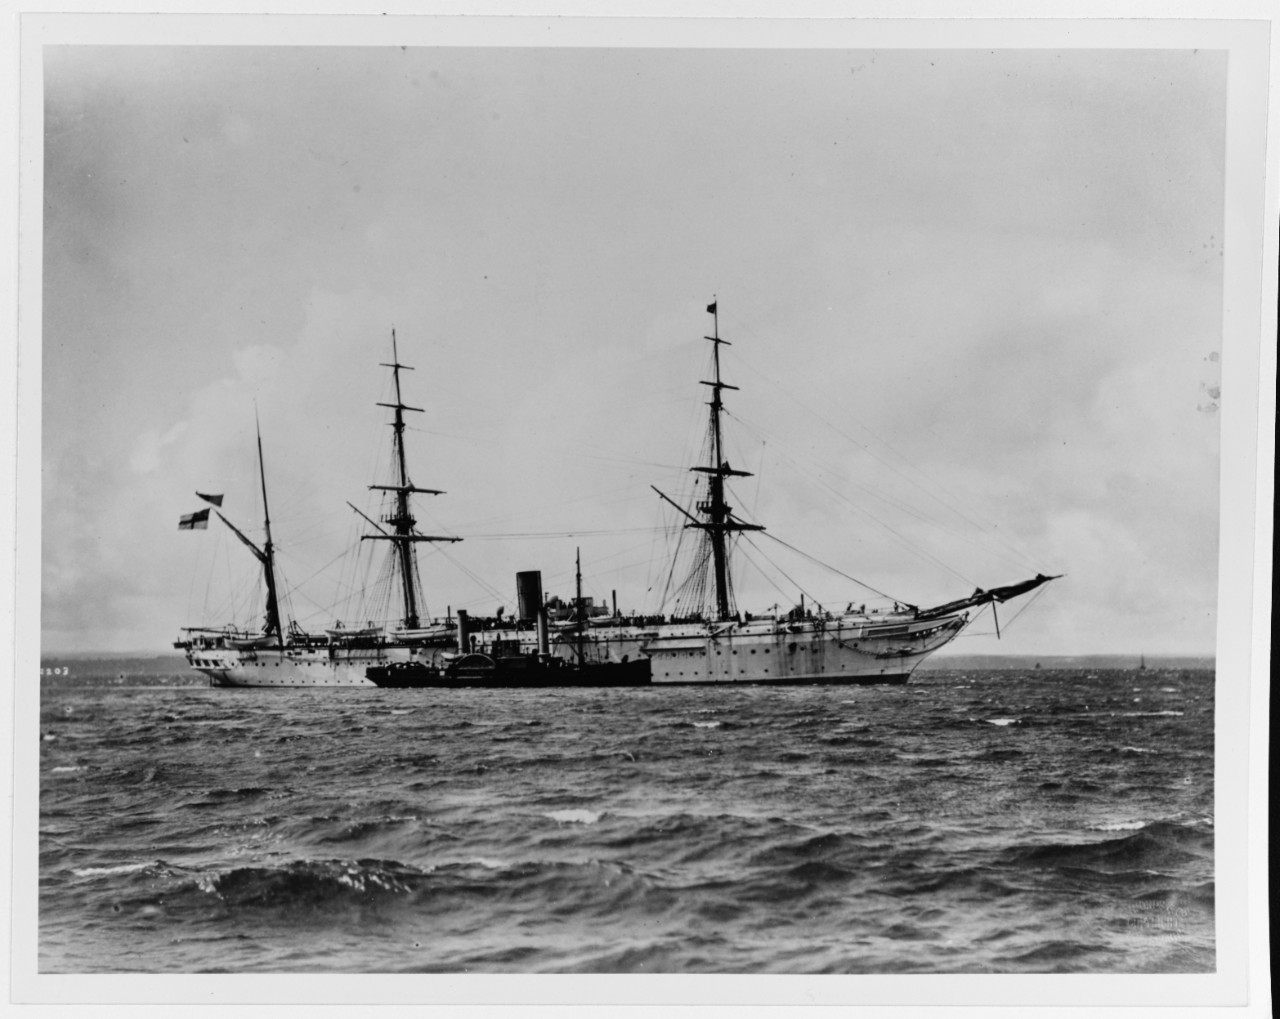 HIMALAYA (British Navy troopship, 1853-1904)